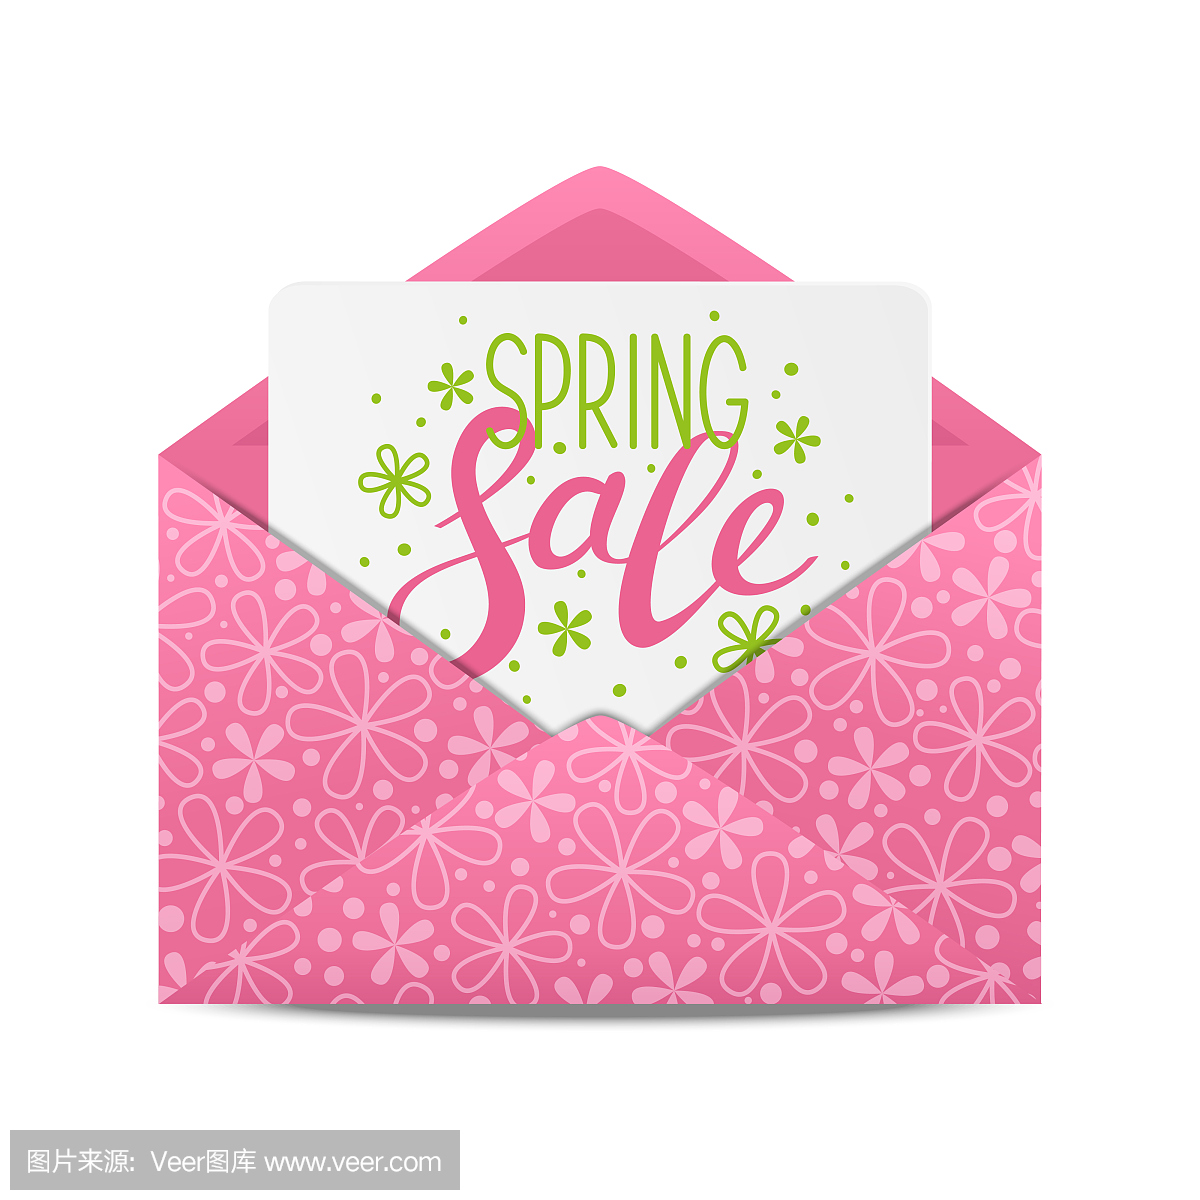 Spring sale message in envelope